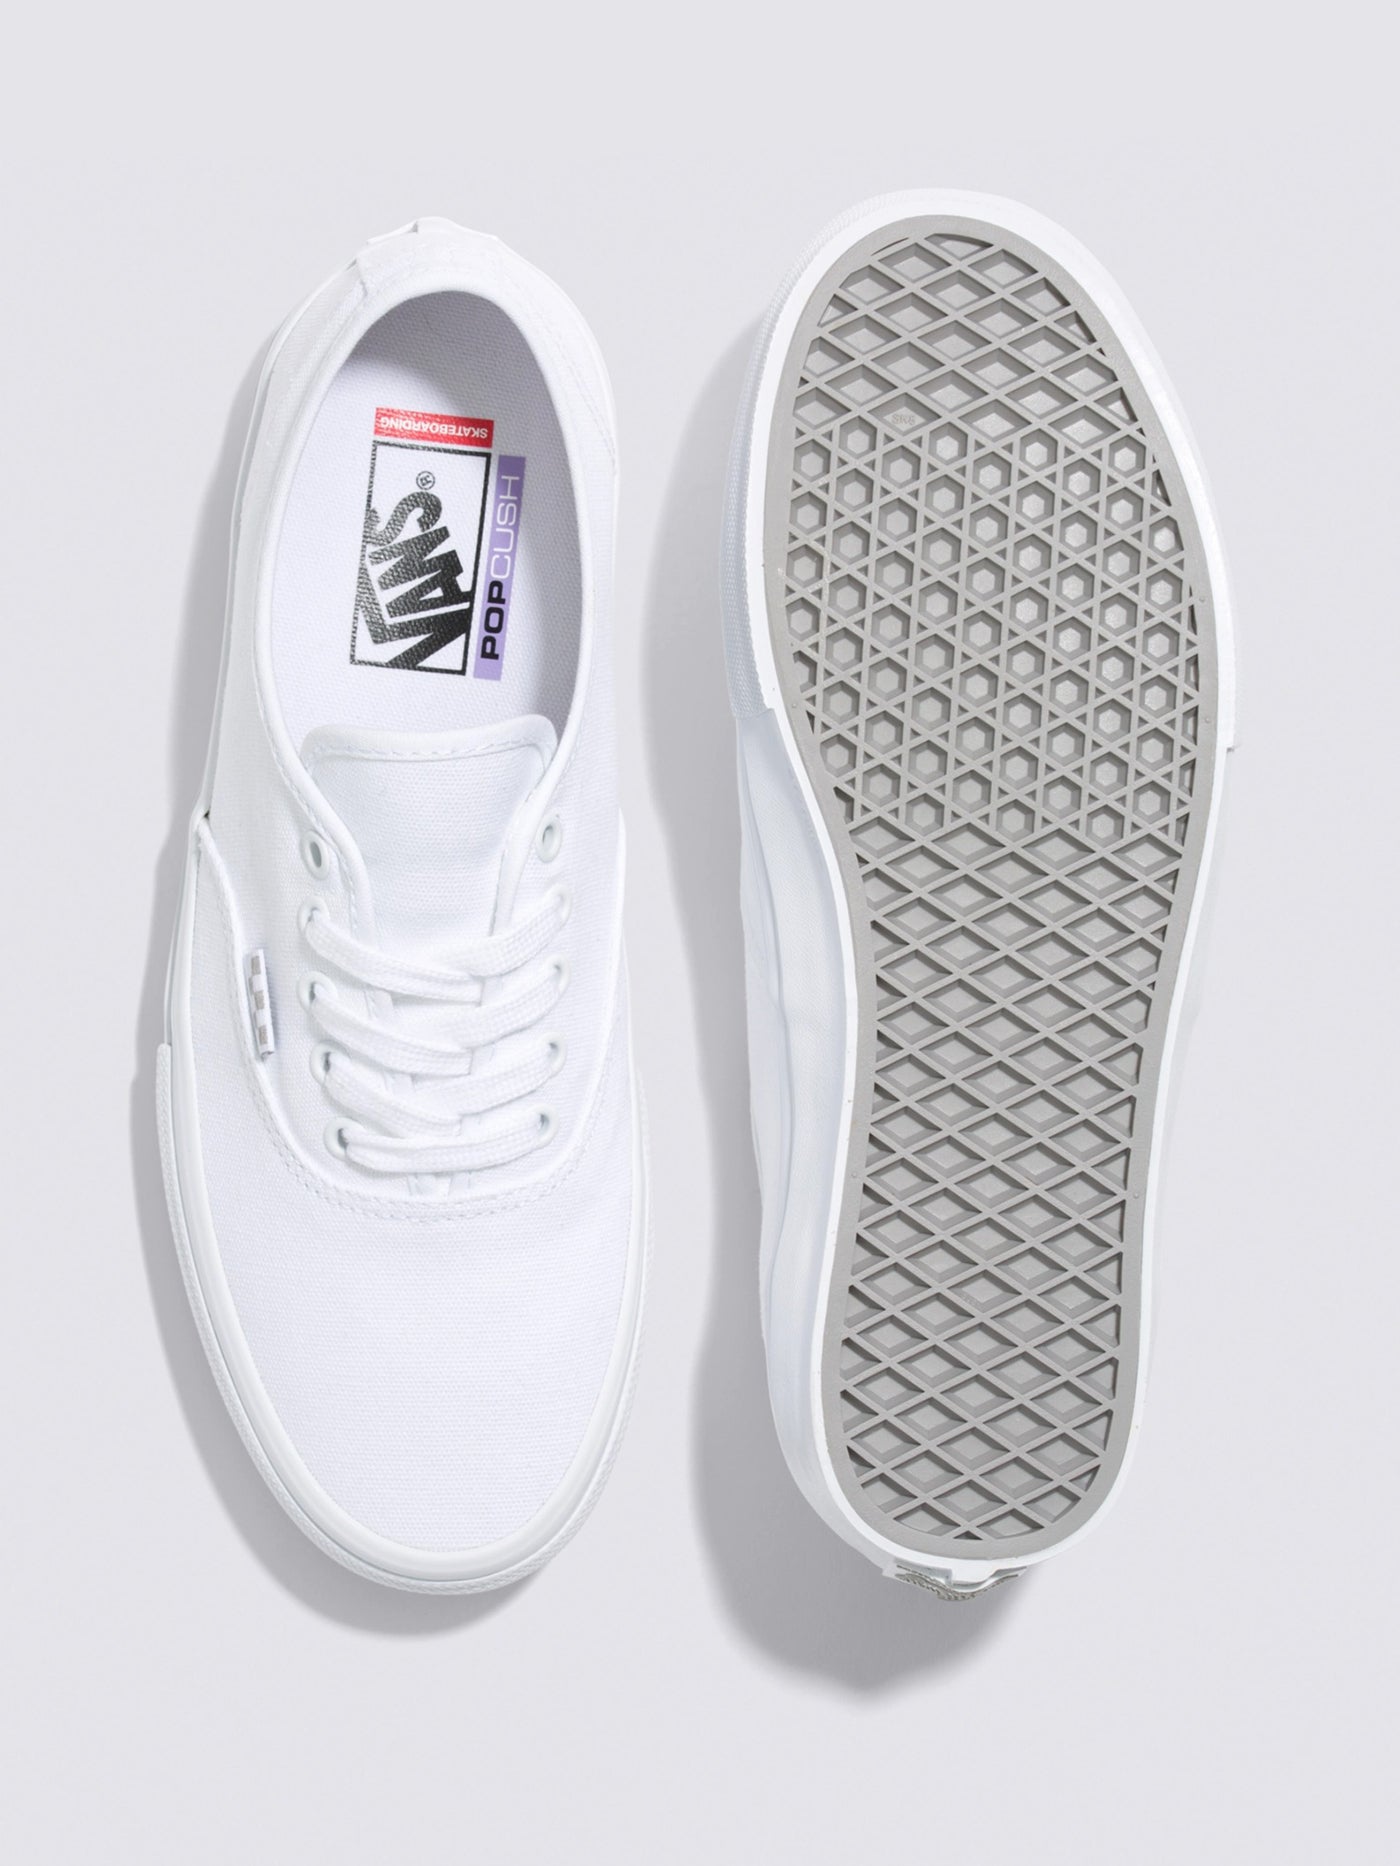 Vans Skate Authentic True White Shoes